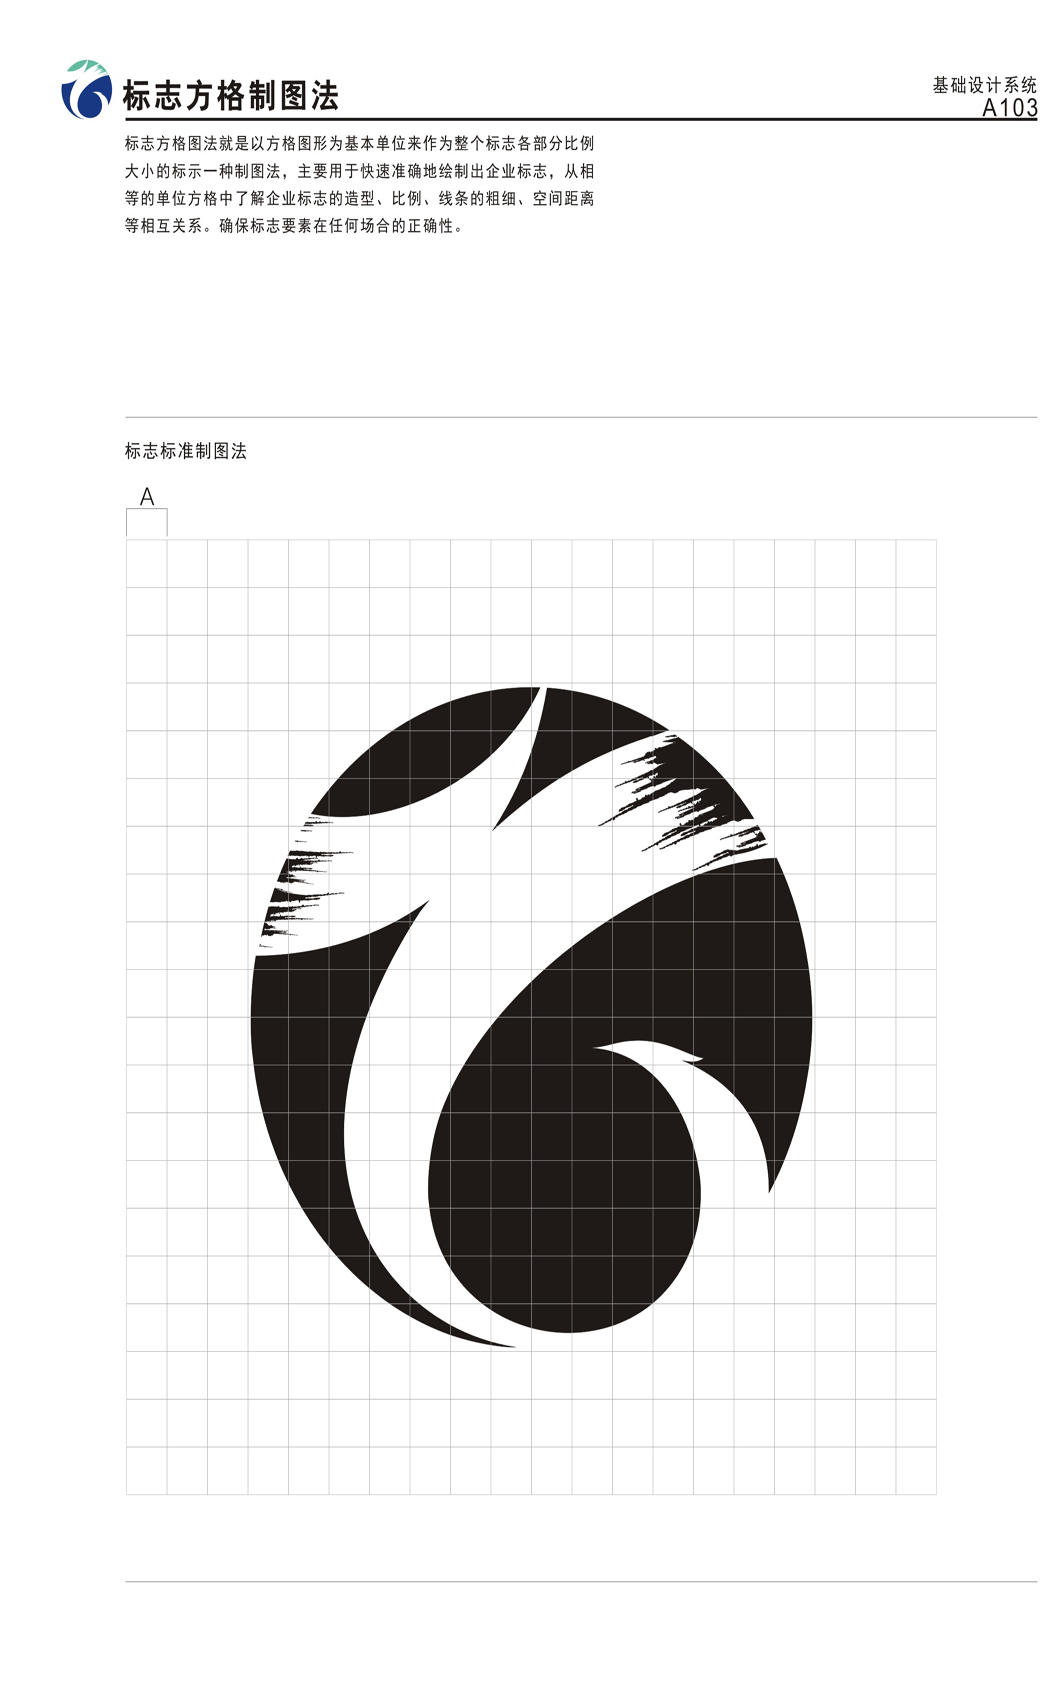 上海成信集团标志设计图2